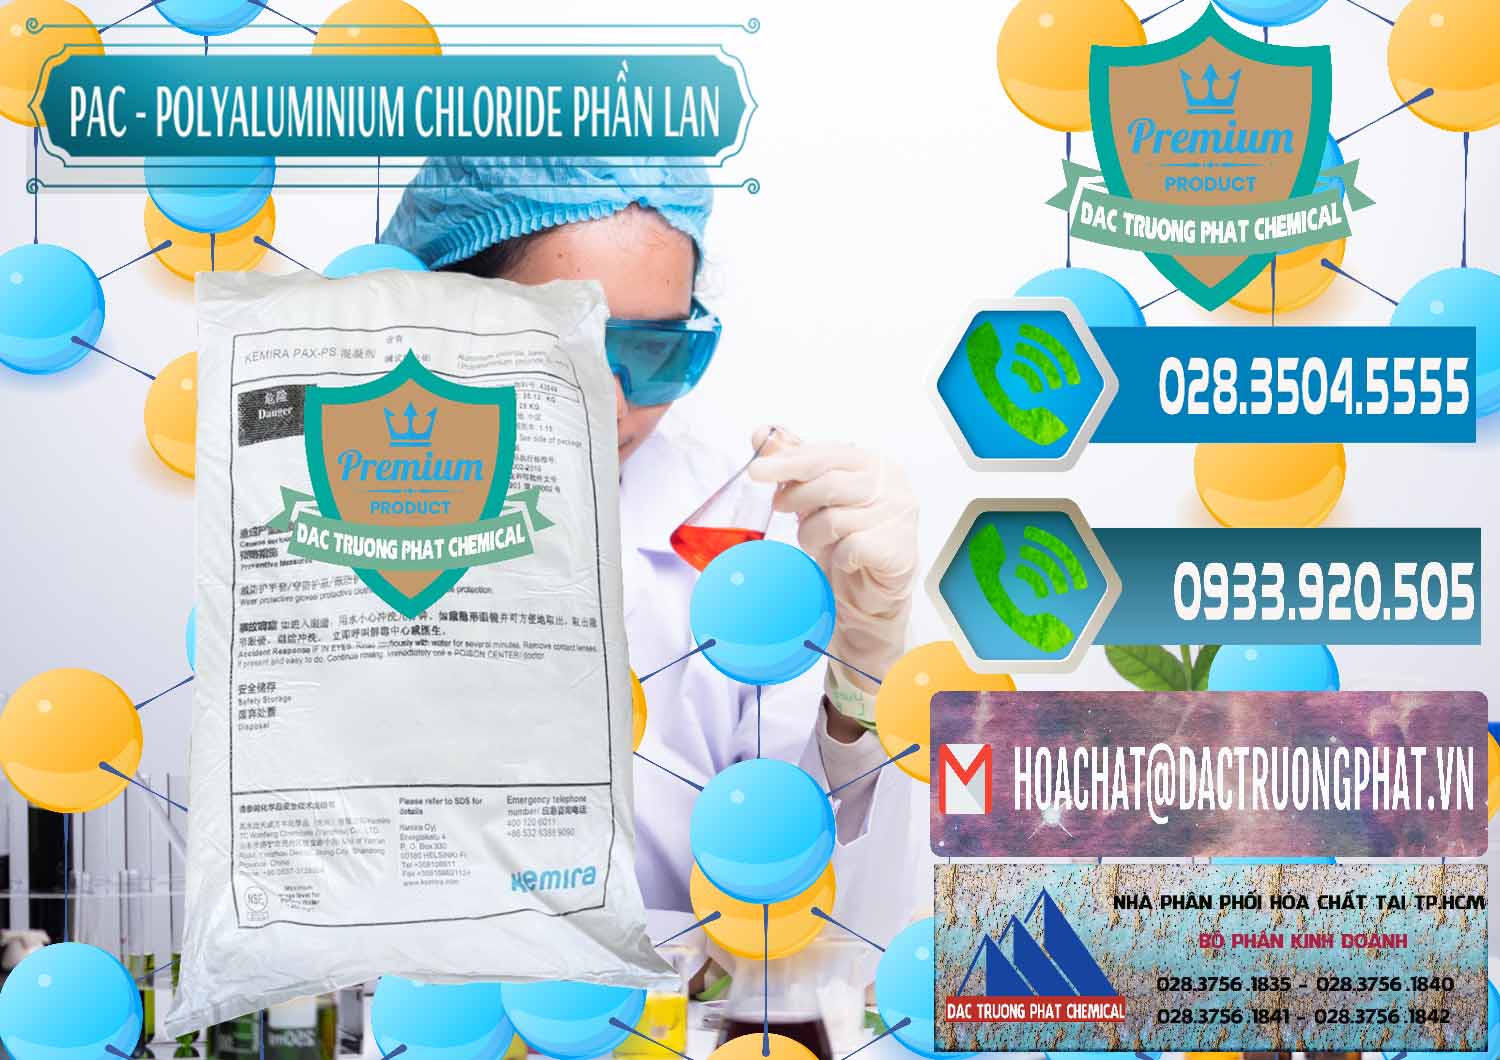 Chuyên bán _ cung ứng PAC - Polyaluminium Chloride Phần Lan Finland - 0383 - Cty chuyên kinh doanh & phân phối hóa chất tại TP.HCM - congtyhoachat.net